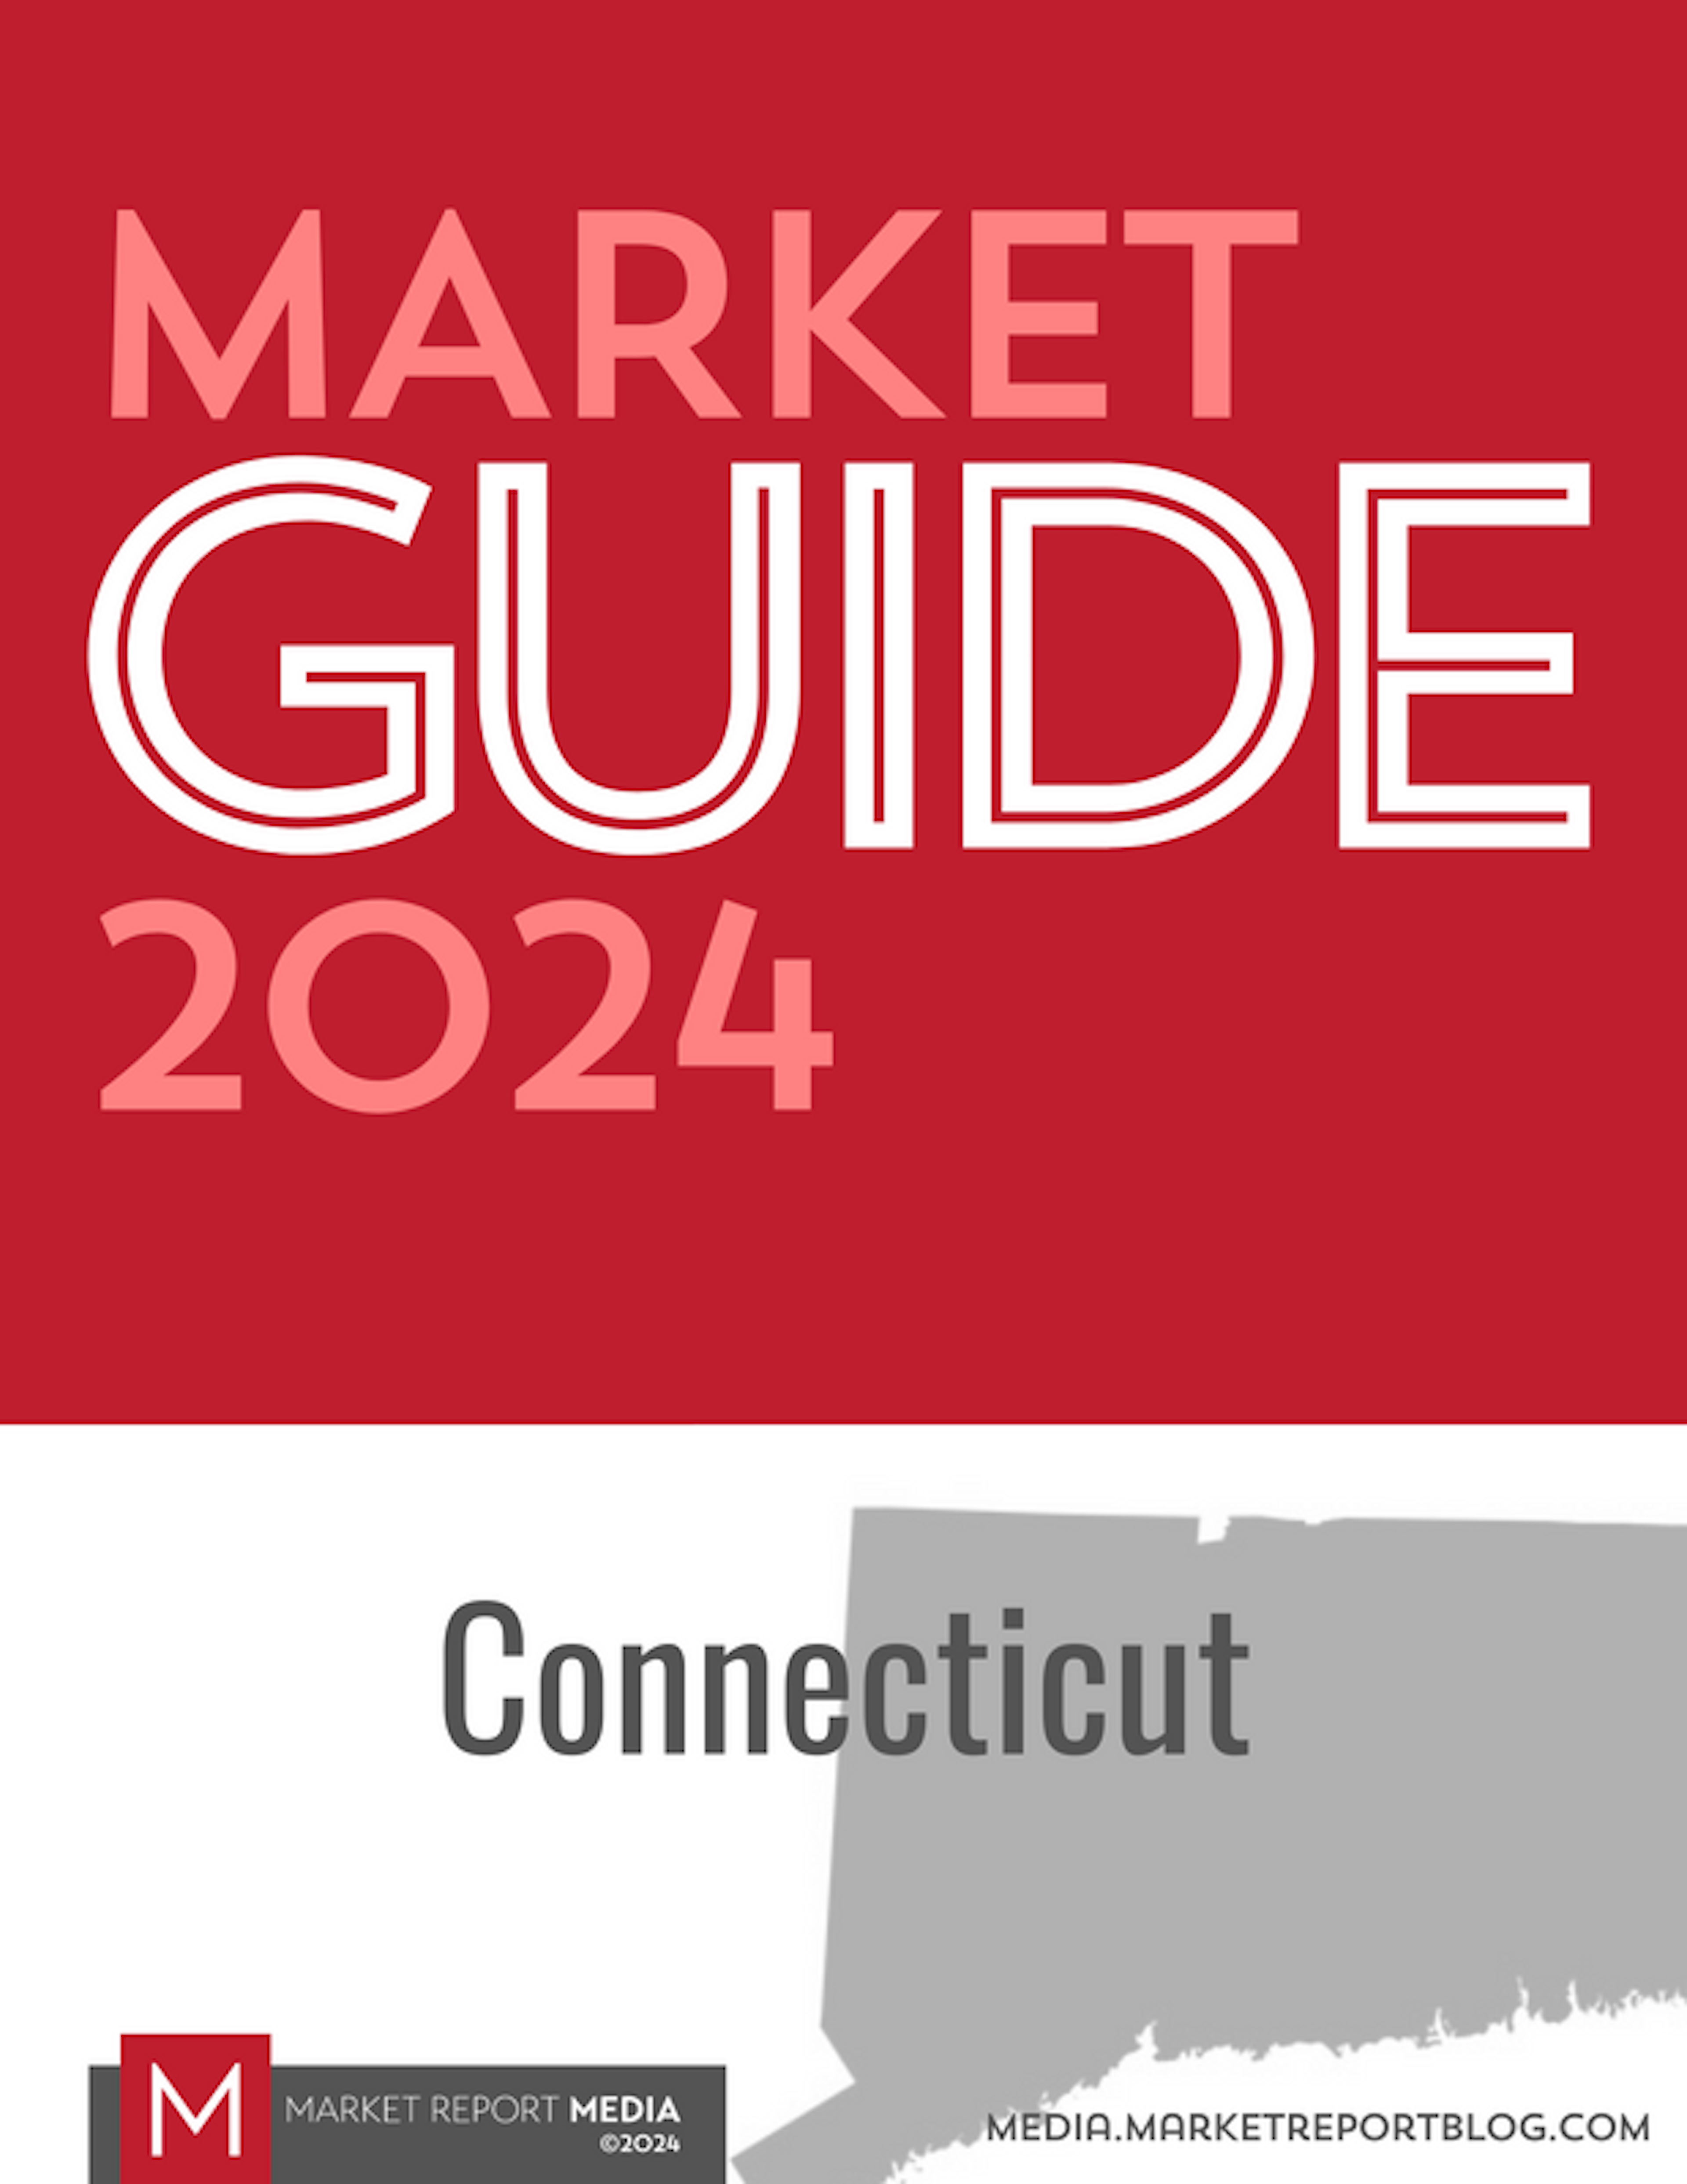 Market Guide 2024 - Connecticut